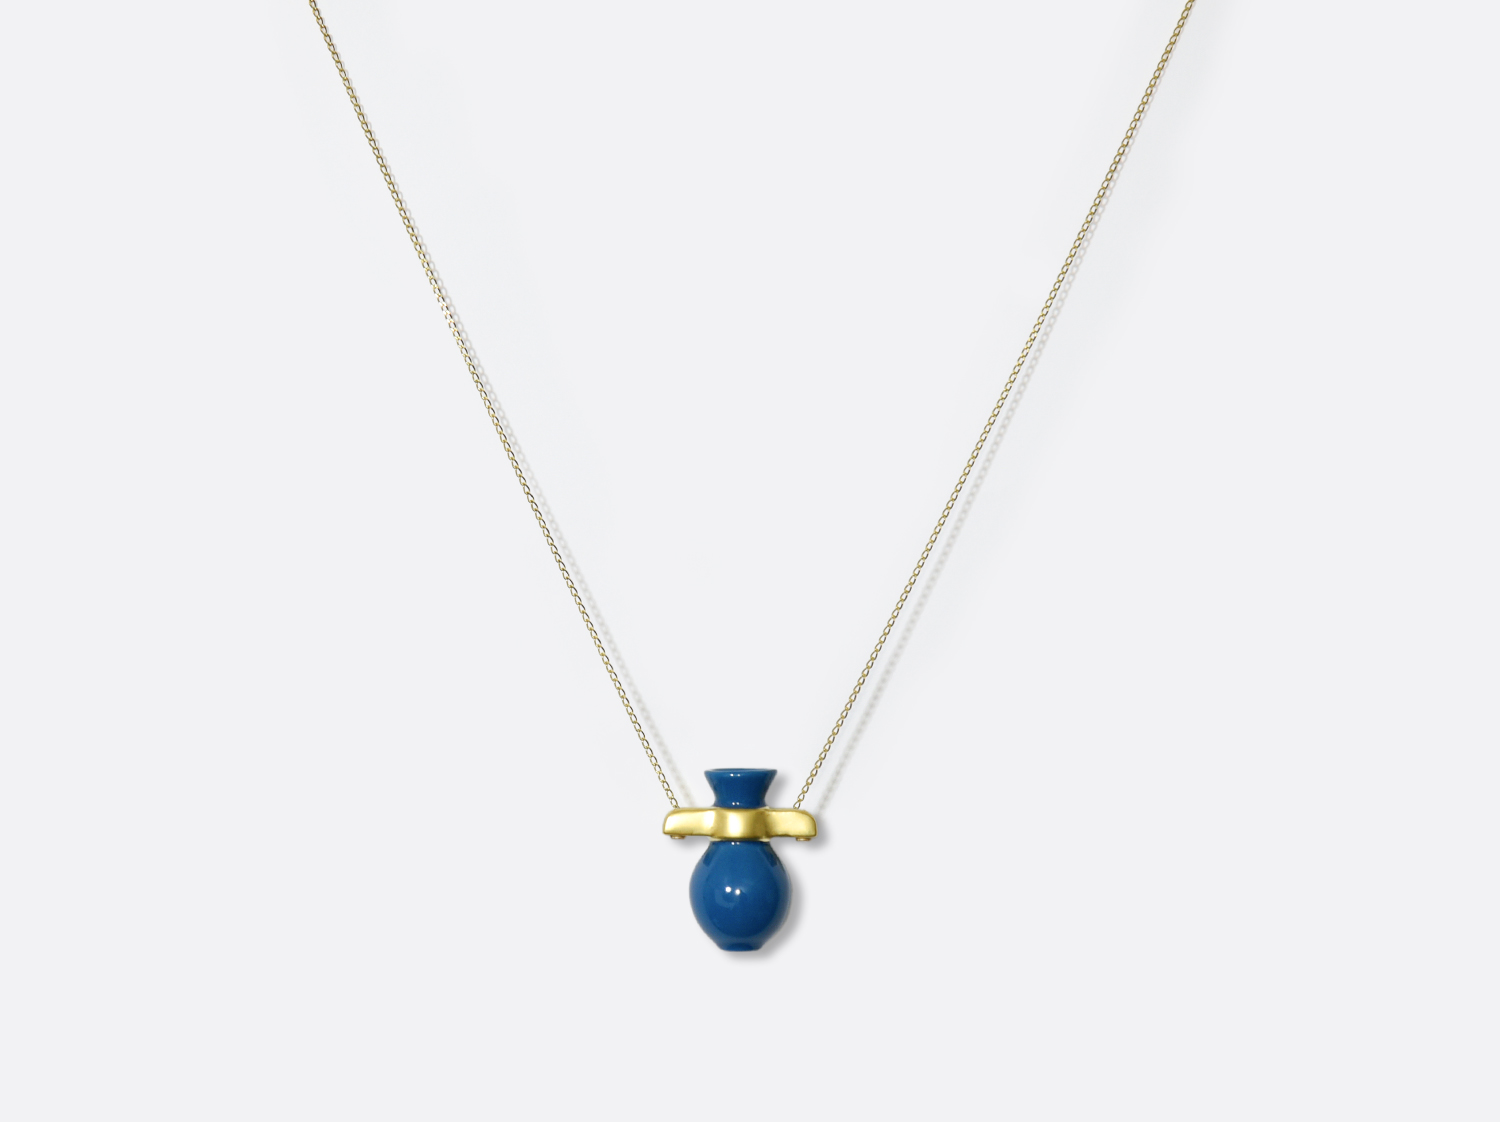 Pendentif Fiorela Bleu et Or en porcelaine de la collection Fiorela Bleu Bernardaud